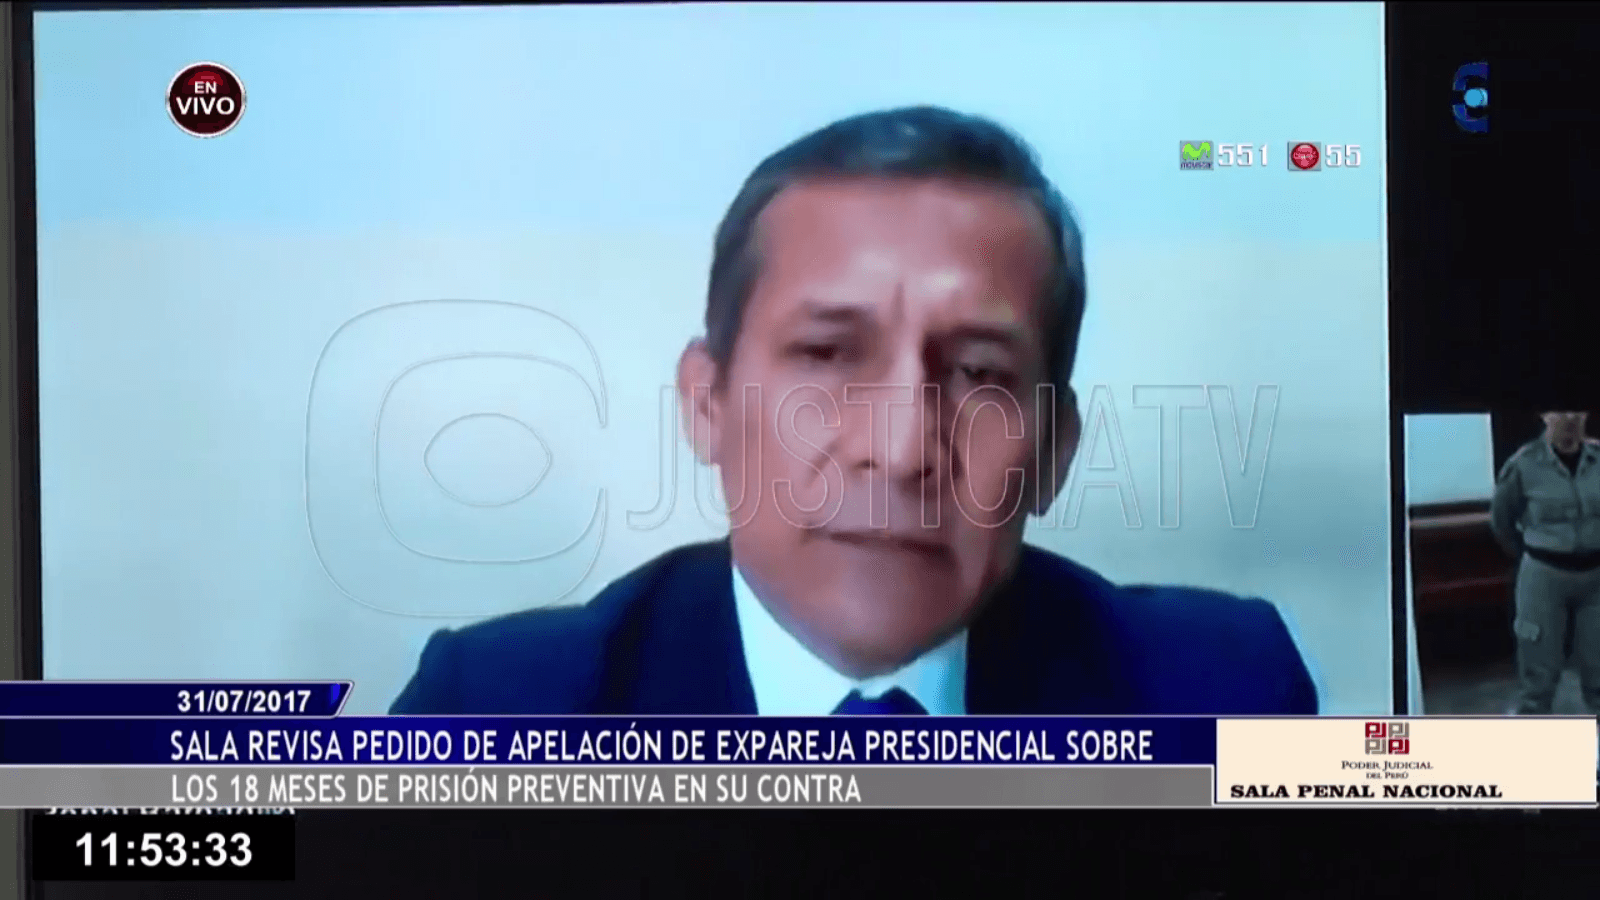 Ollanta Humala Tasso en prisión